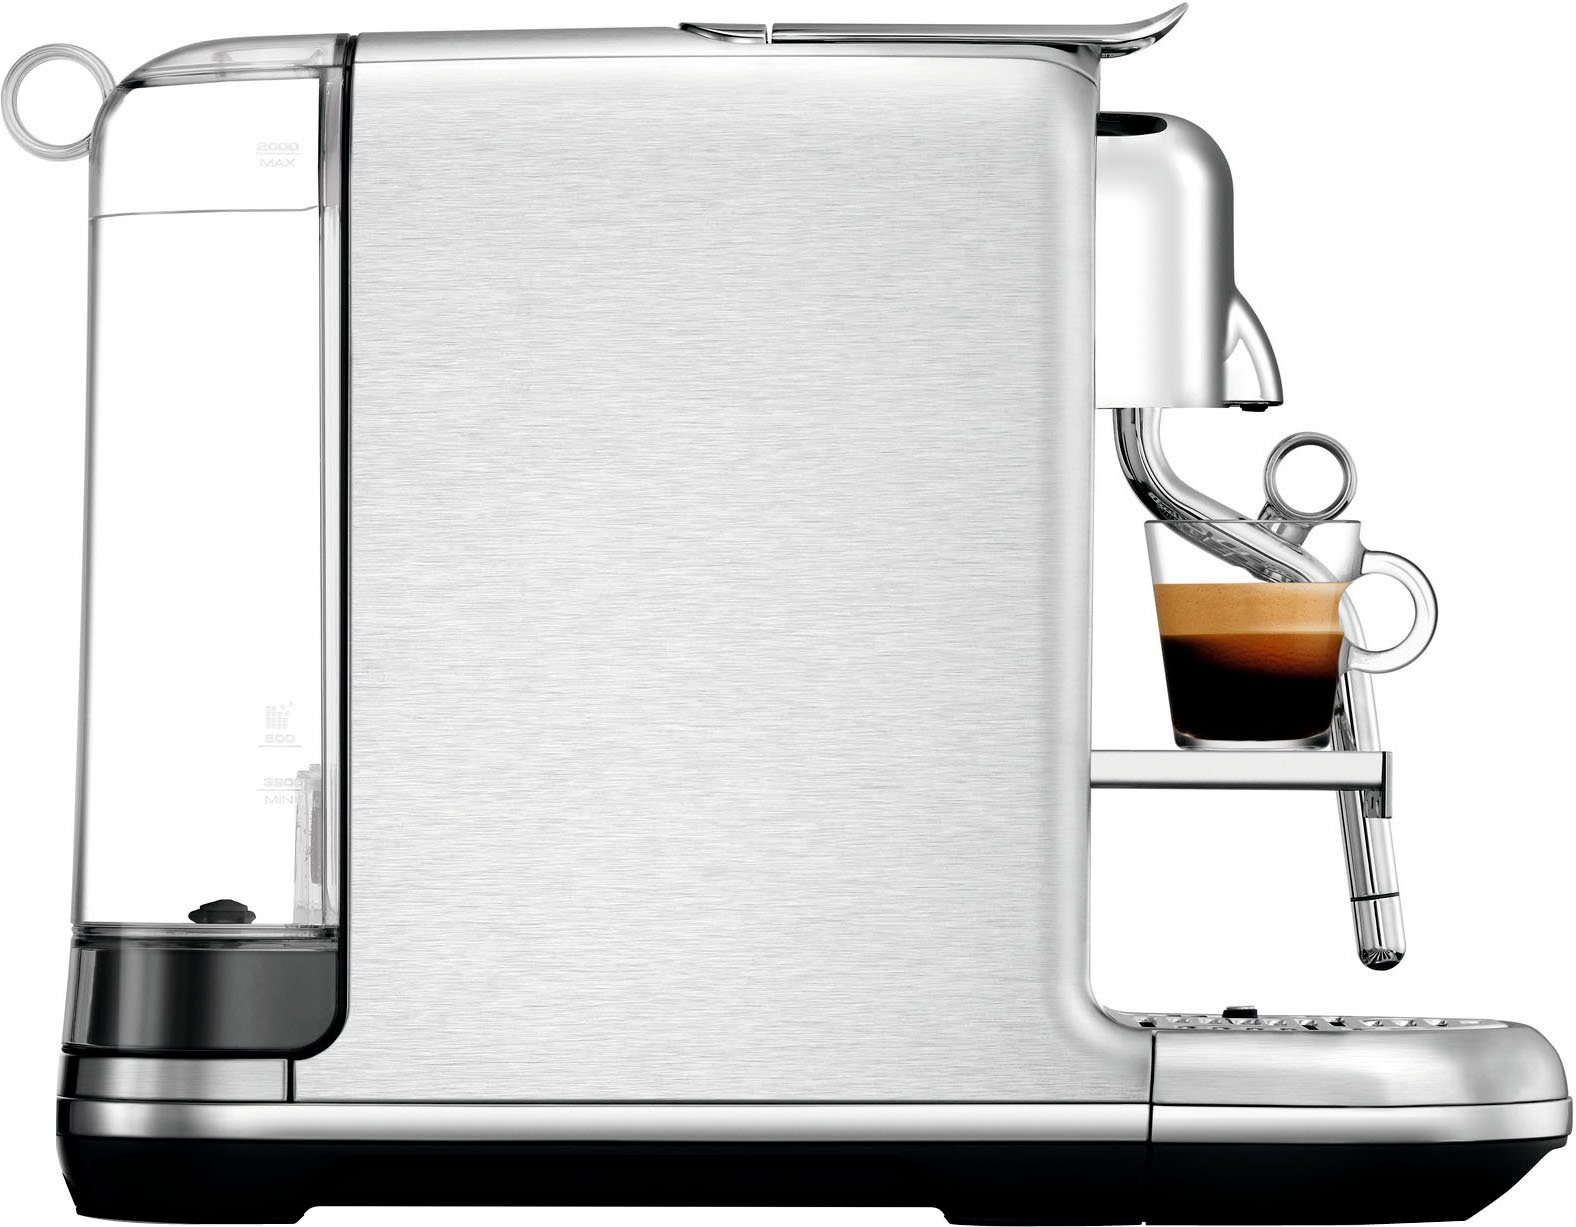 inkl. Kapseln SNE900 Edelstahl-Milchkanne, mit Pro 14 Kapselmaschine Nespresso Creatista Willkommenspaket mit